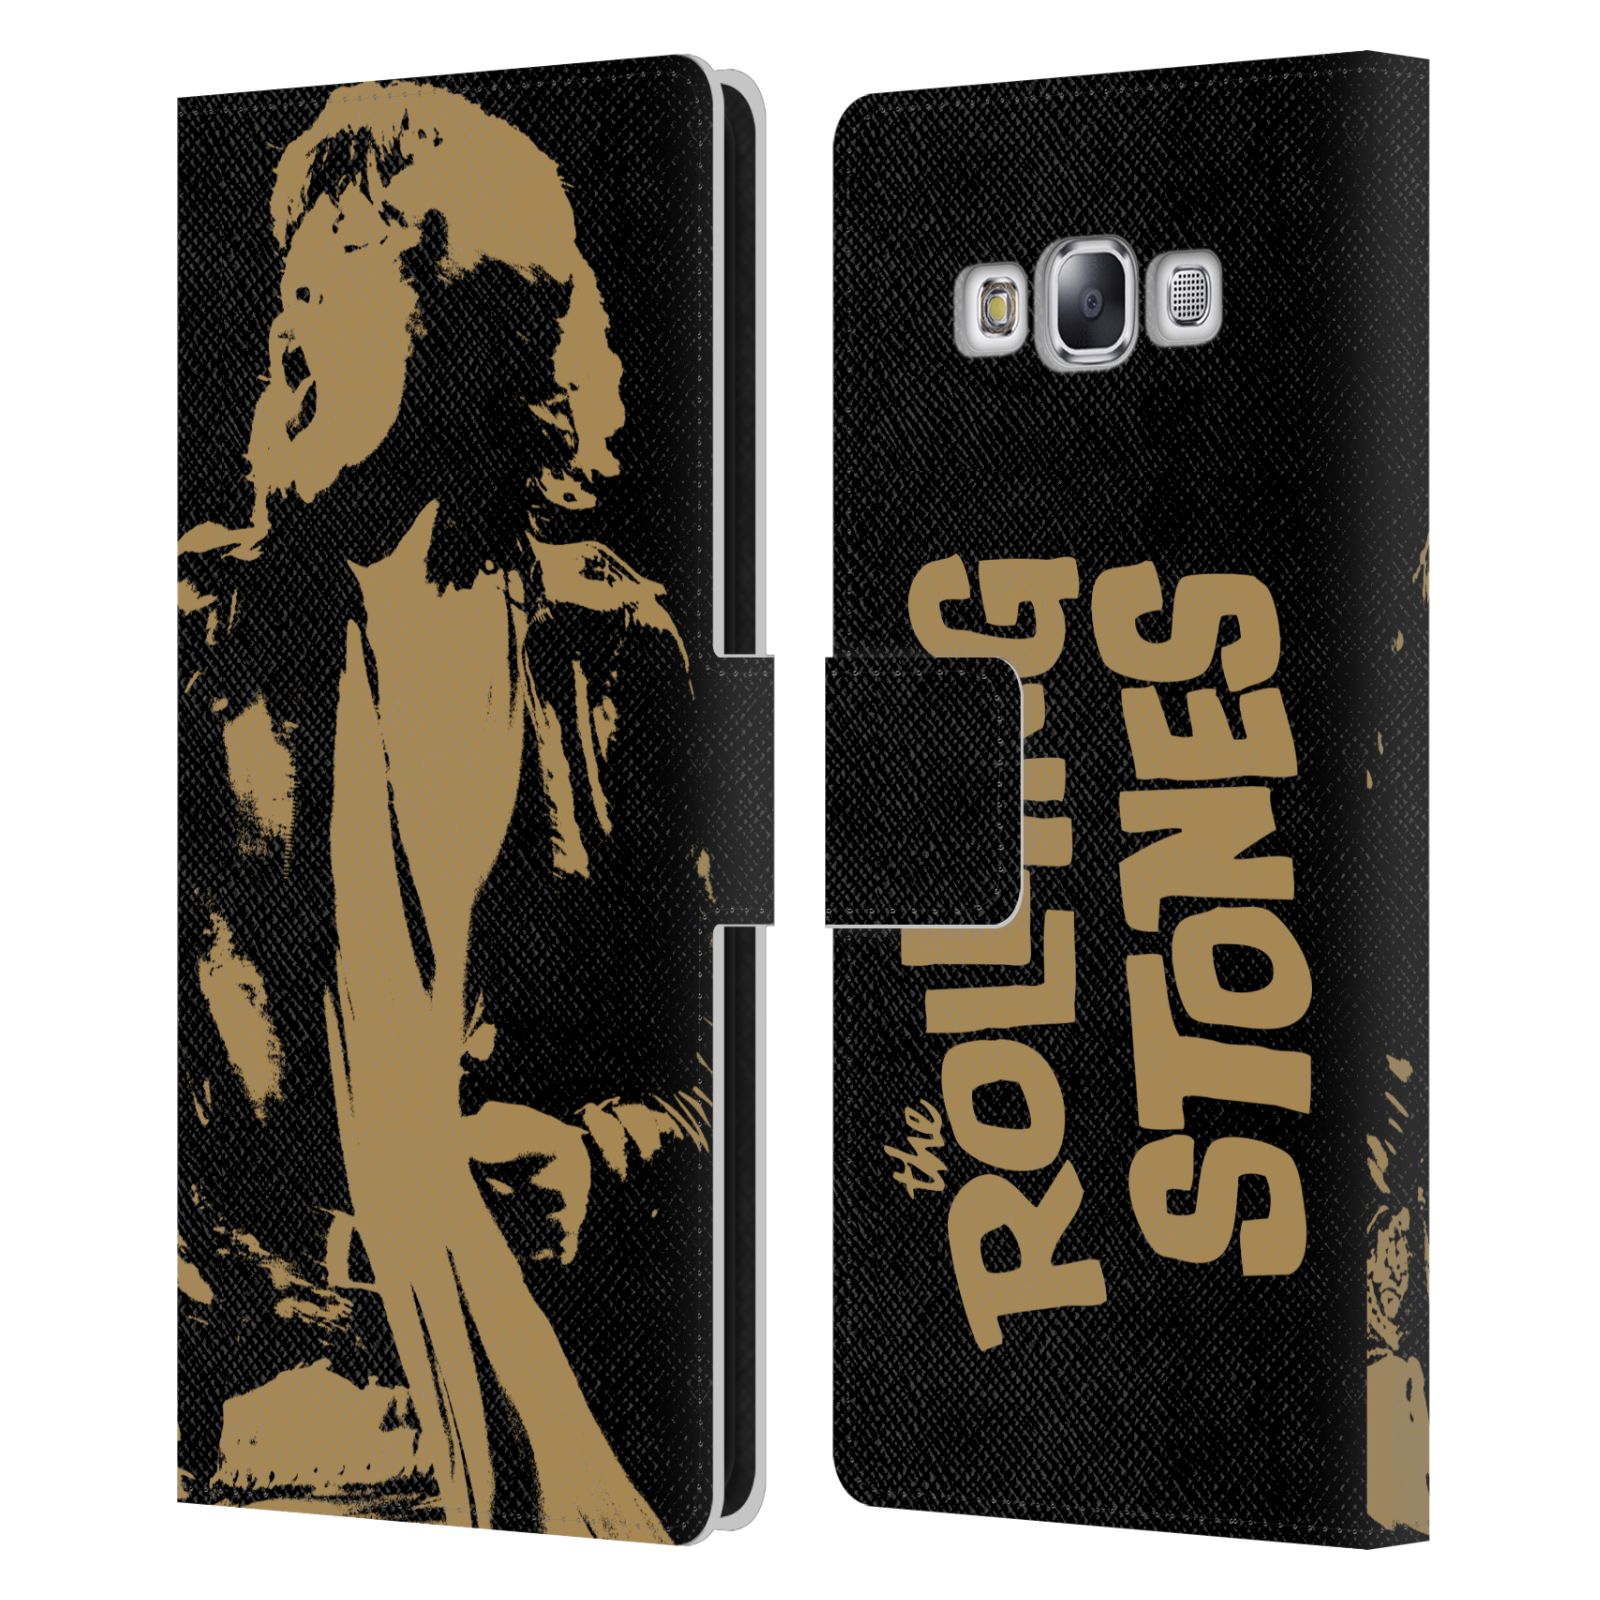 公式ライセンス The Rolling Stones Mick Jagger レザー手帳型ウォレットタイプケース Samsung 電話 3 ザ・ローリング・ストーンズ ローリング・ストーンズ ローリング ストーンズ ベロ・マーク